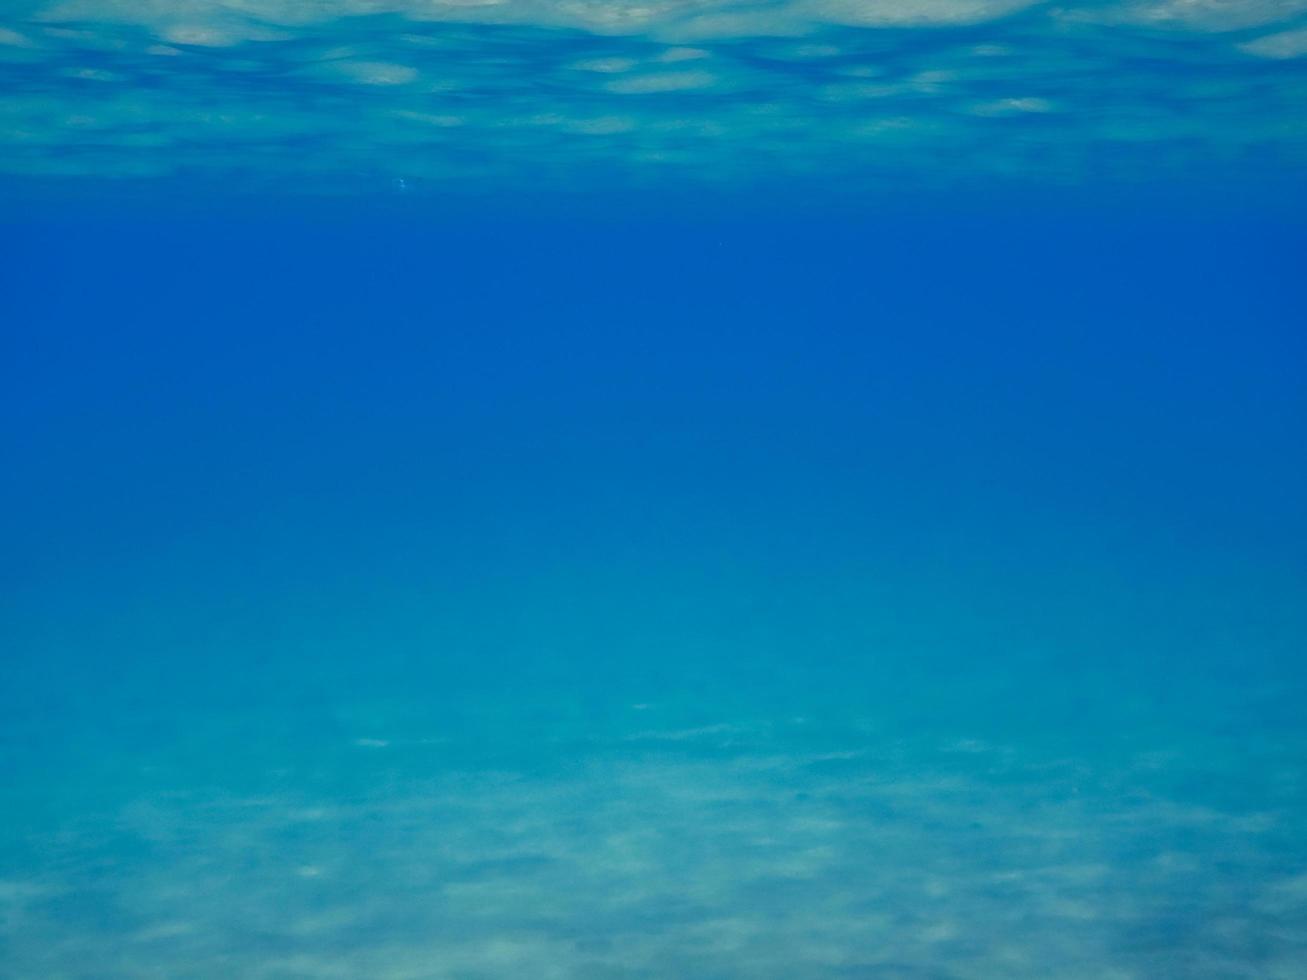 se in i de djup blå med mjuk vågor och reflektioner foto